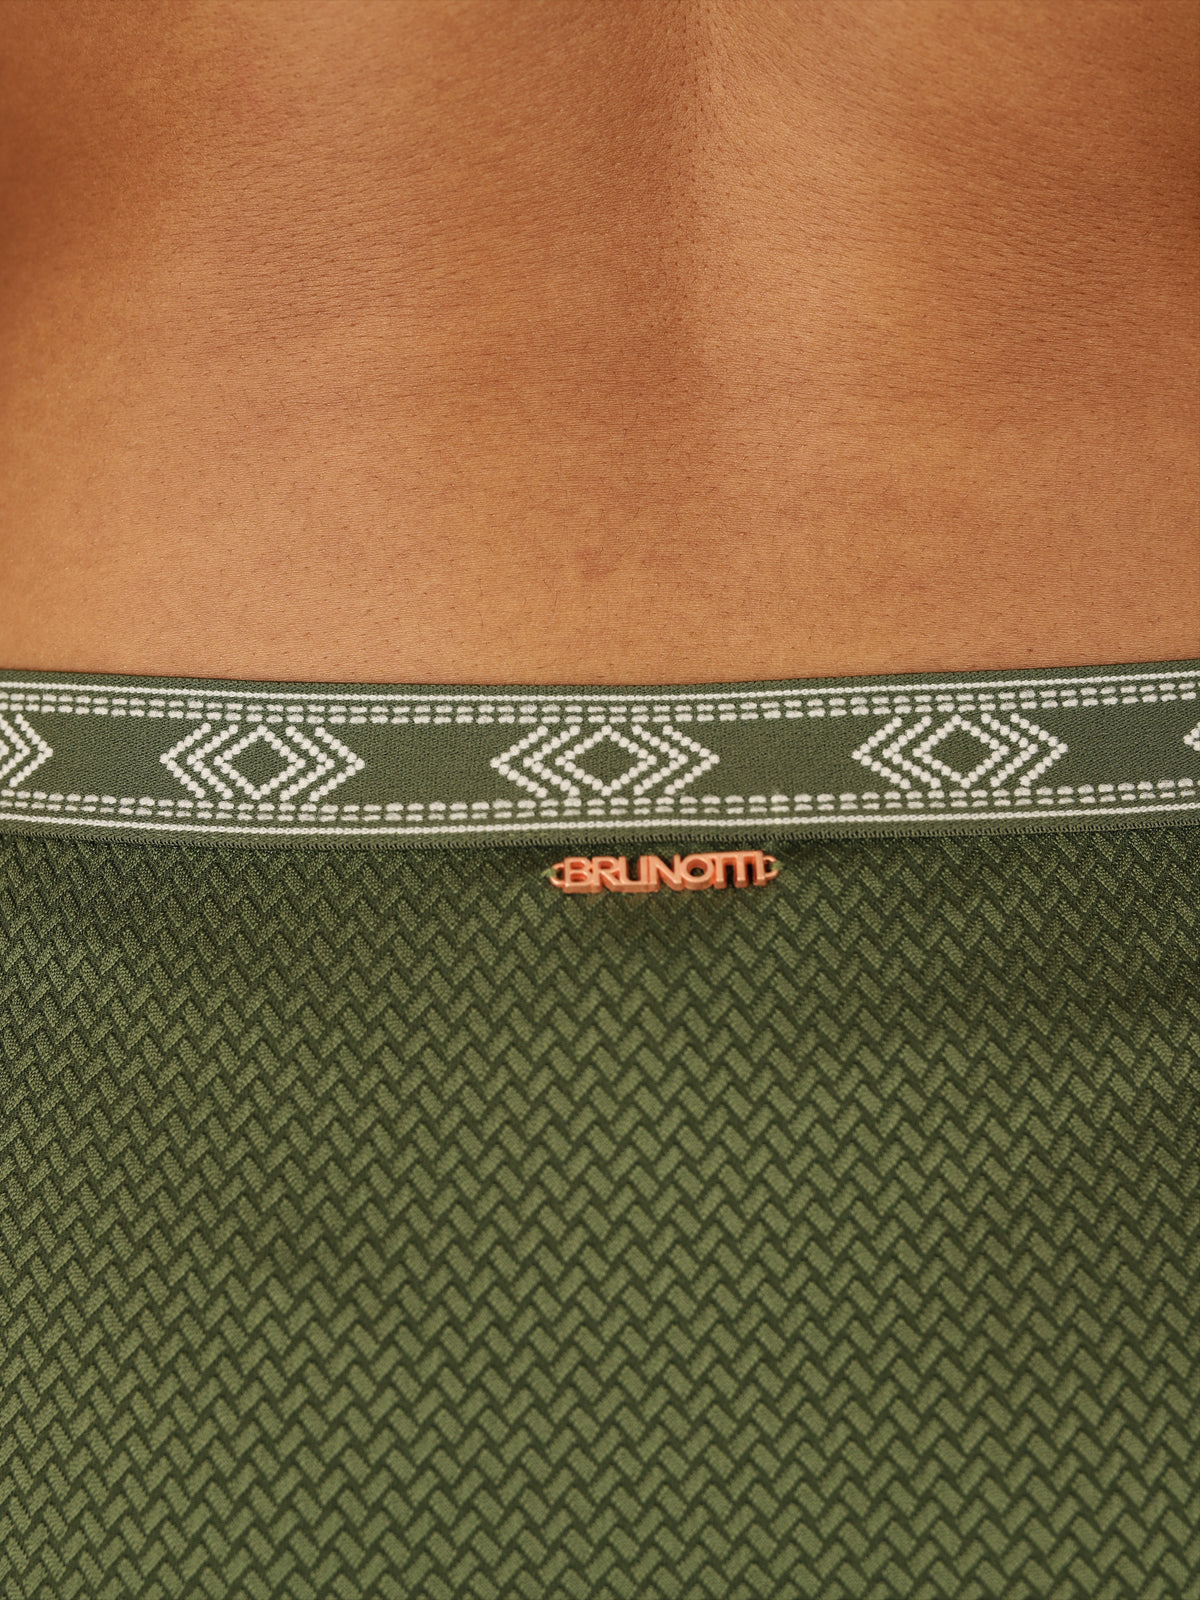 Salsida-STR Women Bikini Bottom | Green